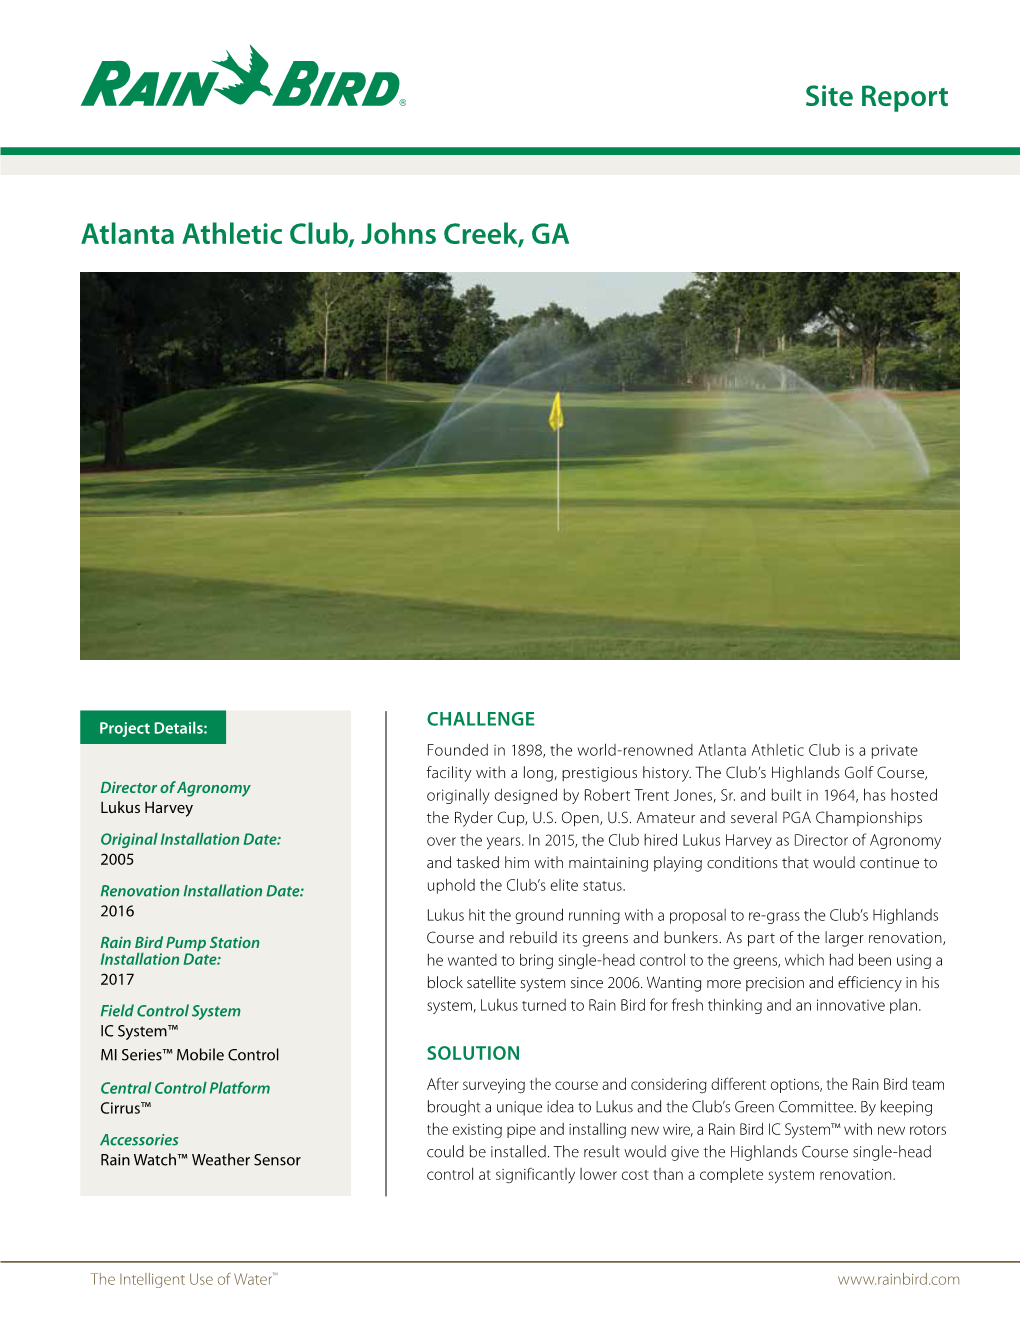 Site Report Atlanta Athletic Club, Johns Creek, GA